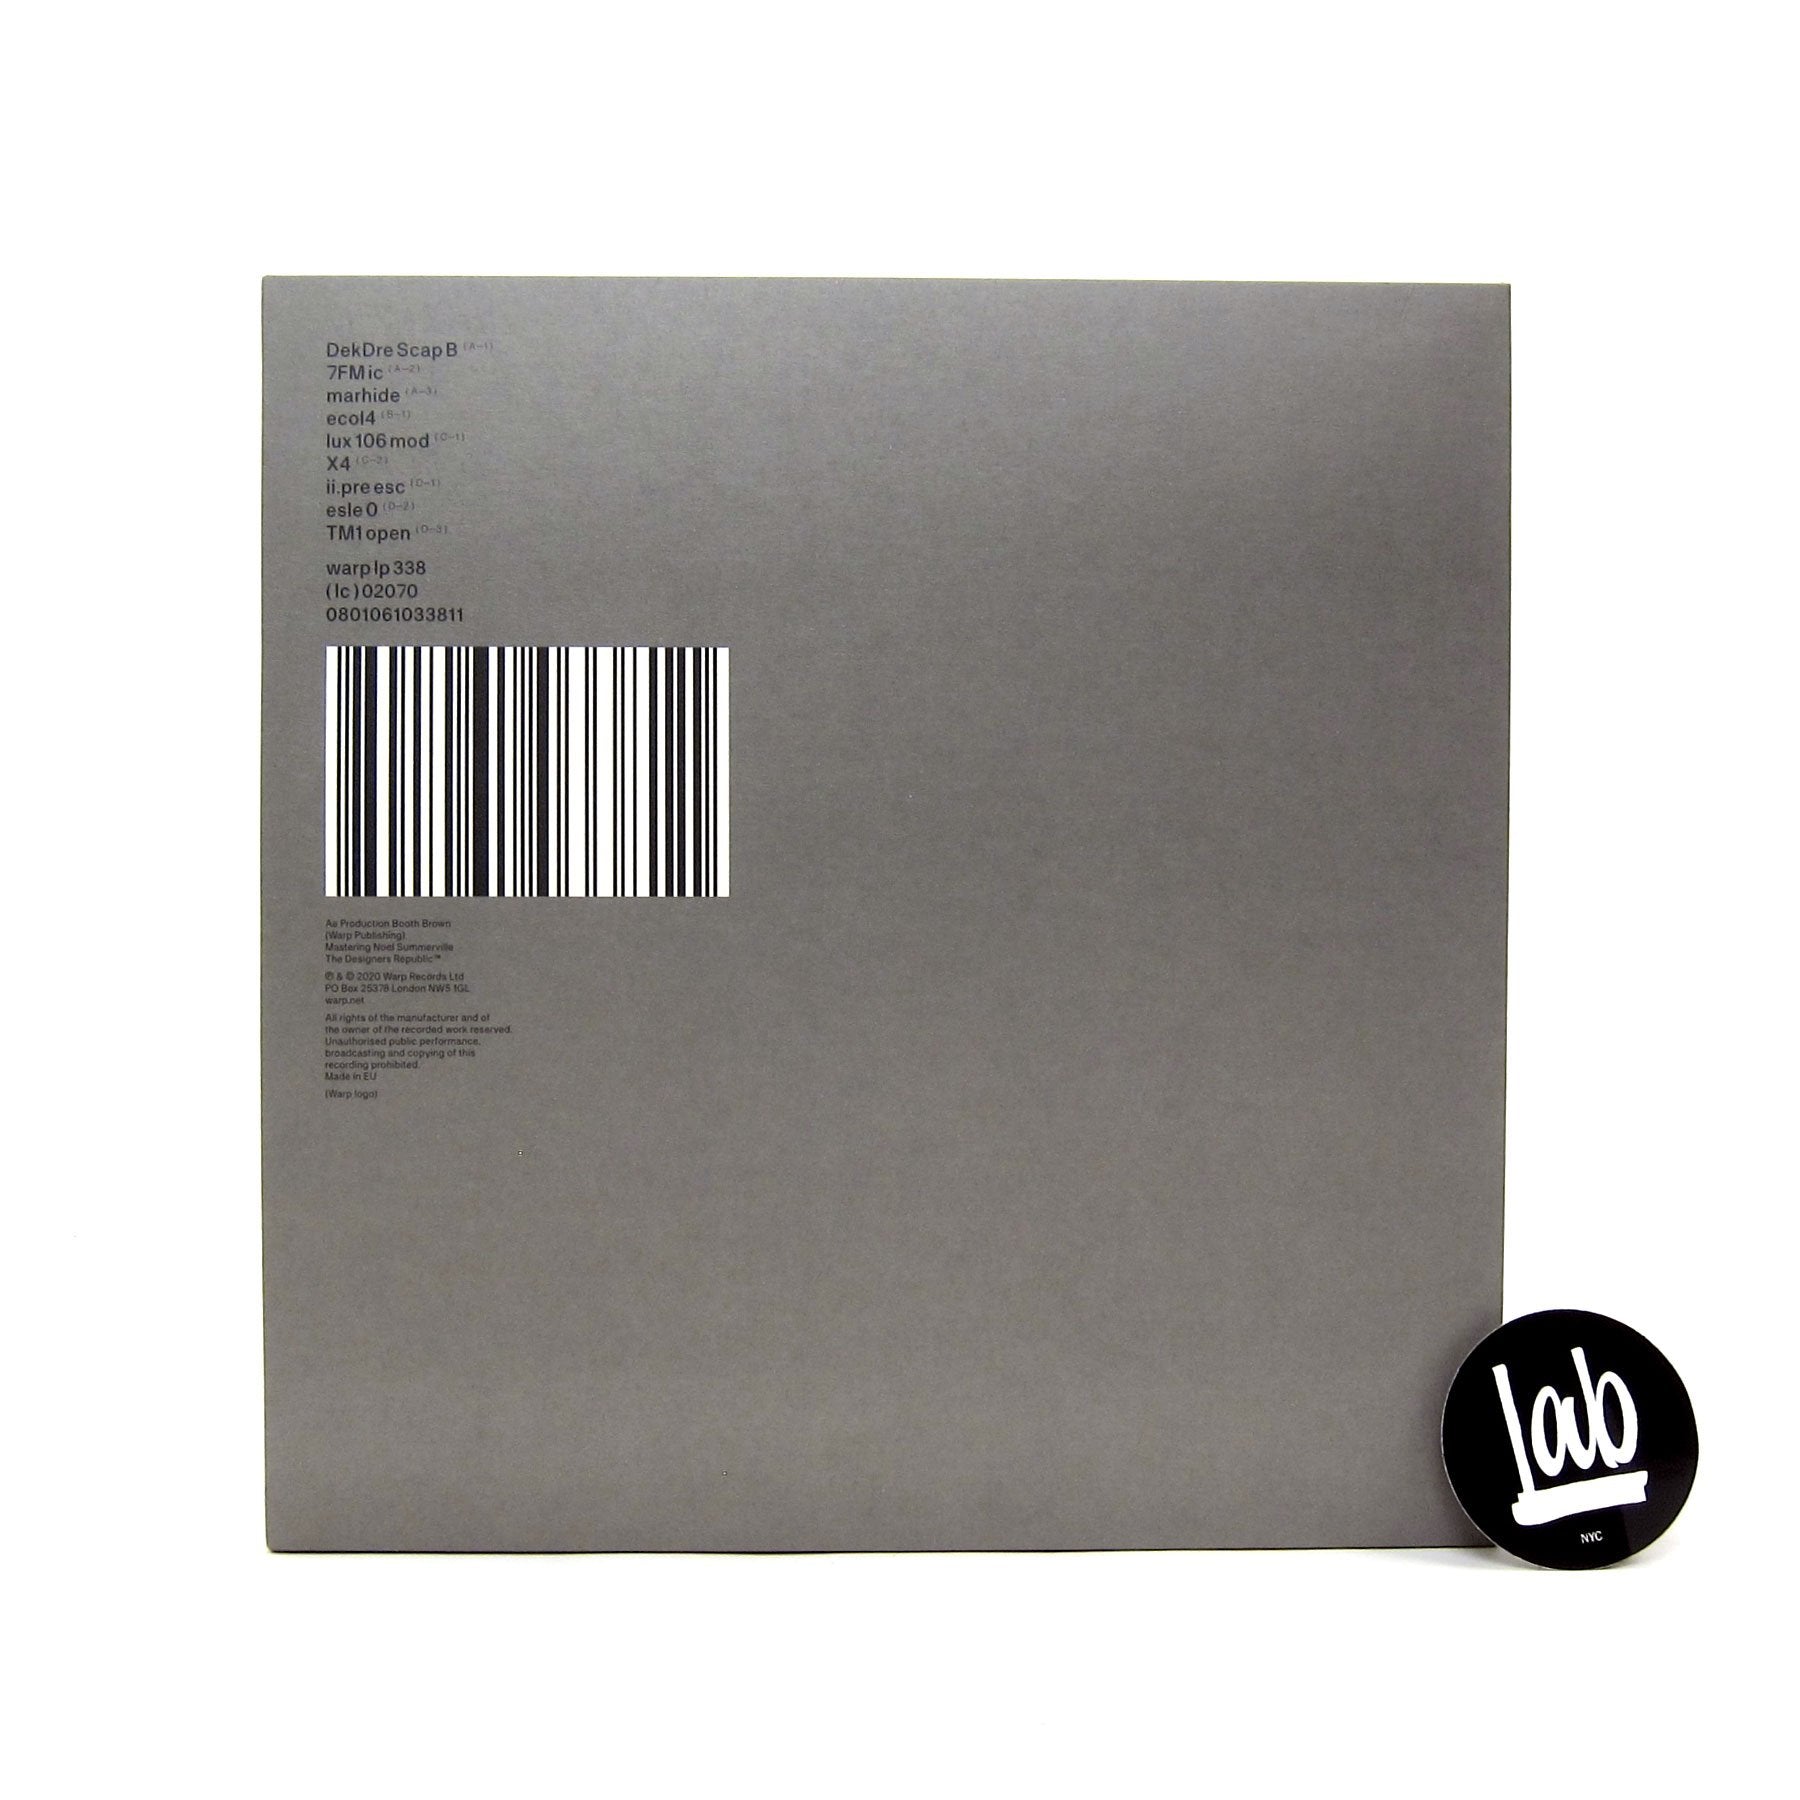 Autechre: PLUS Vinyl 2LP